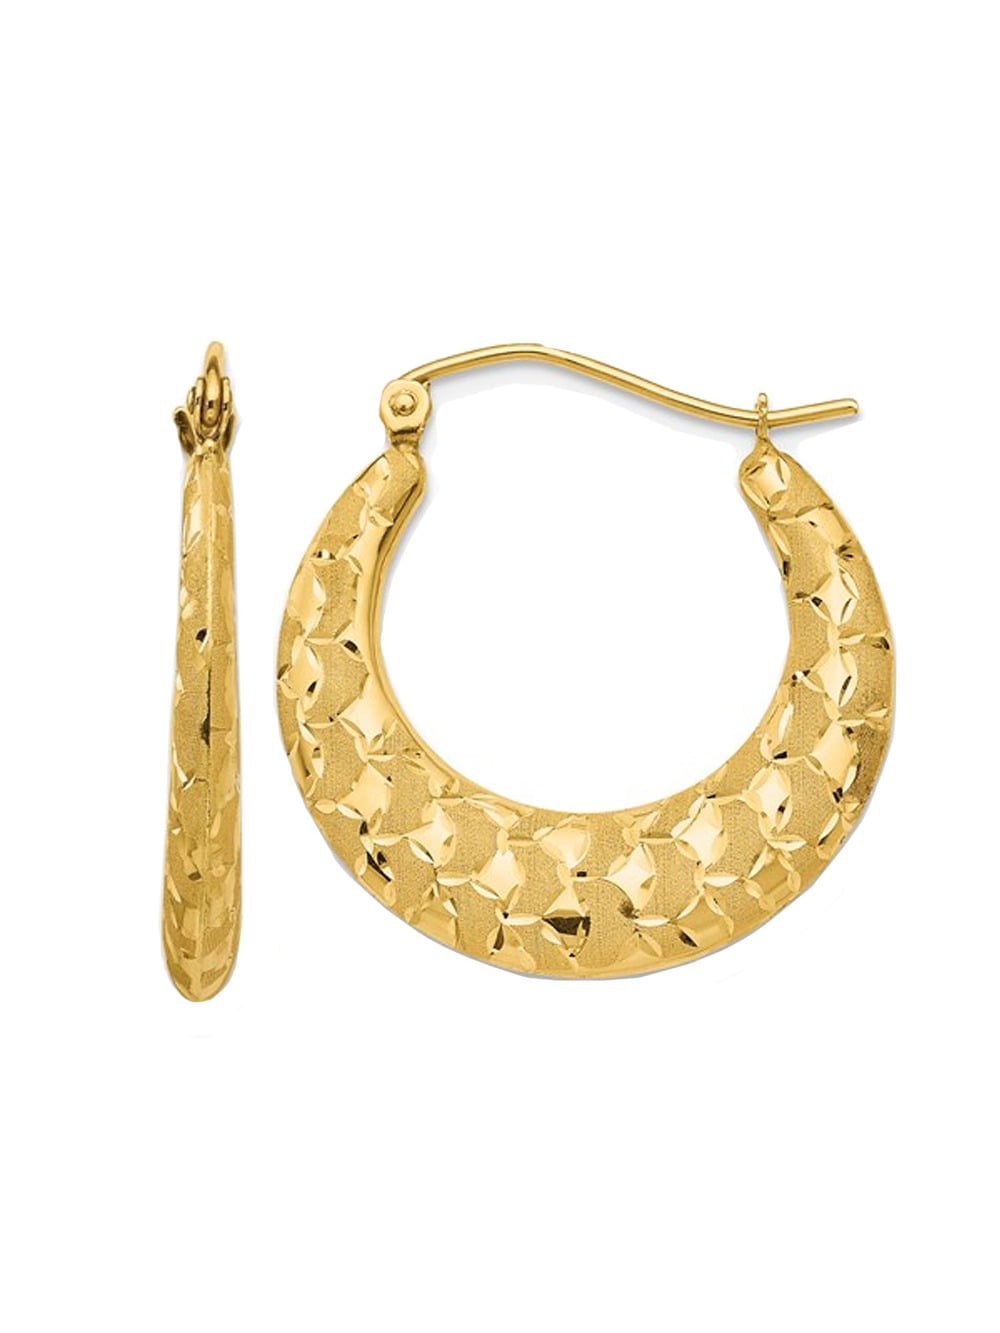 Women's 10K Yellow Gold 3.00MM Hollow Tube Hoop Earrings 